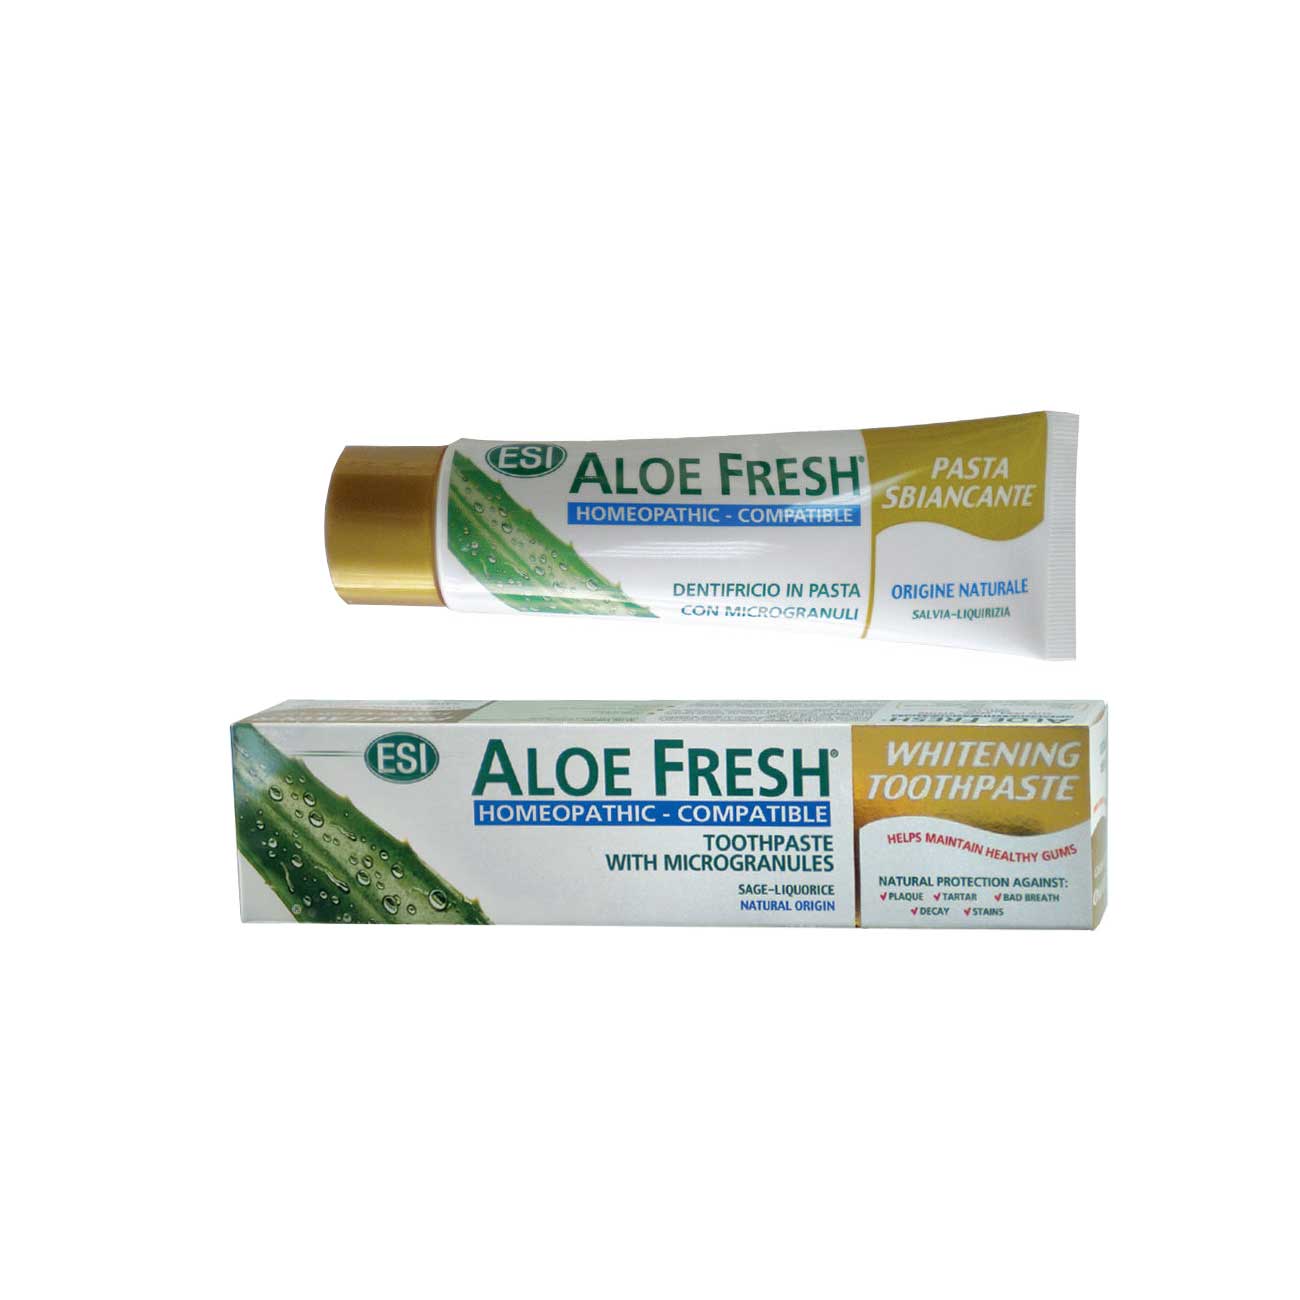 ESI Aloe Fresh Whitening Toothpaste